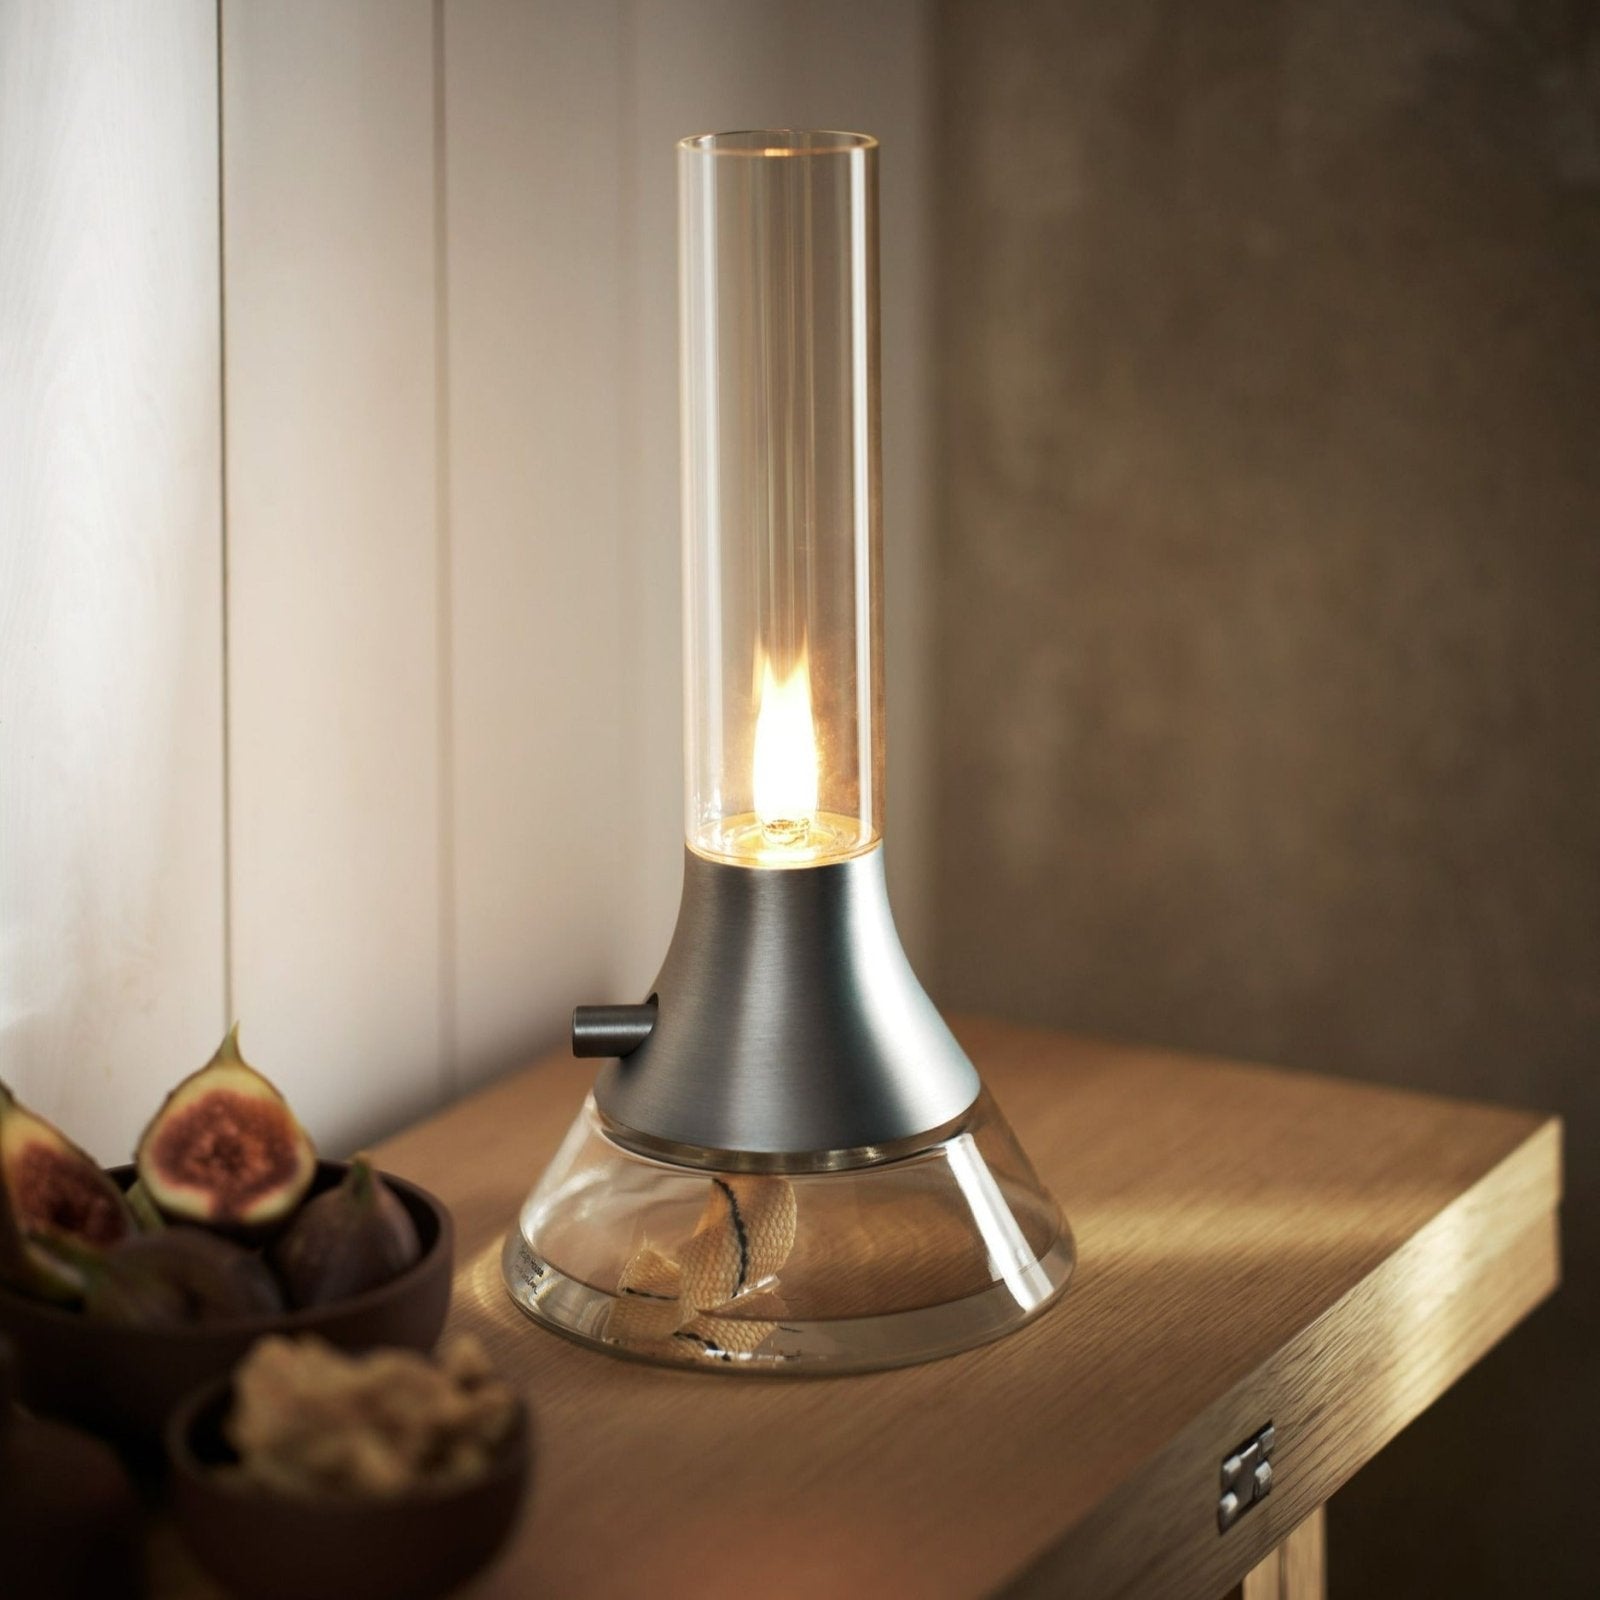 Fyr - Öllampe / Petroleumleuchte Tischlampe von Design House Stockholm